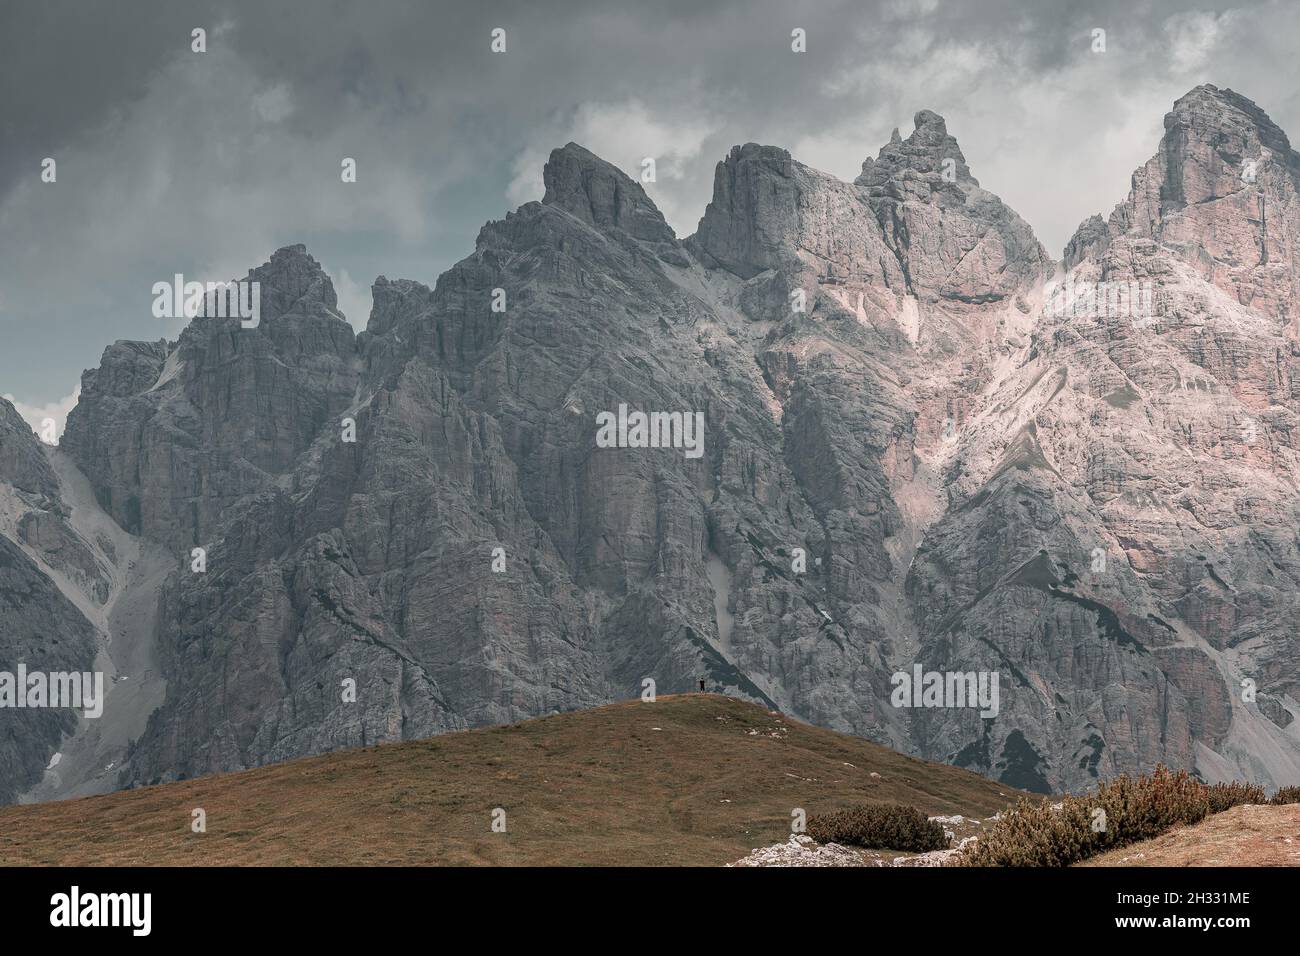 Montañas Dolomitas, picos increíbles en buenas condiciones climáticas. Increíble naturaleza veraniega con ambiente y luz. Foto de stock